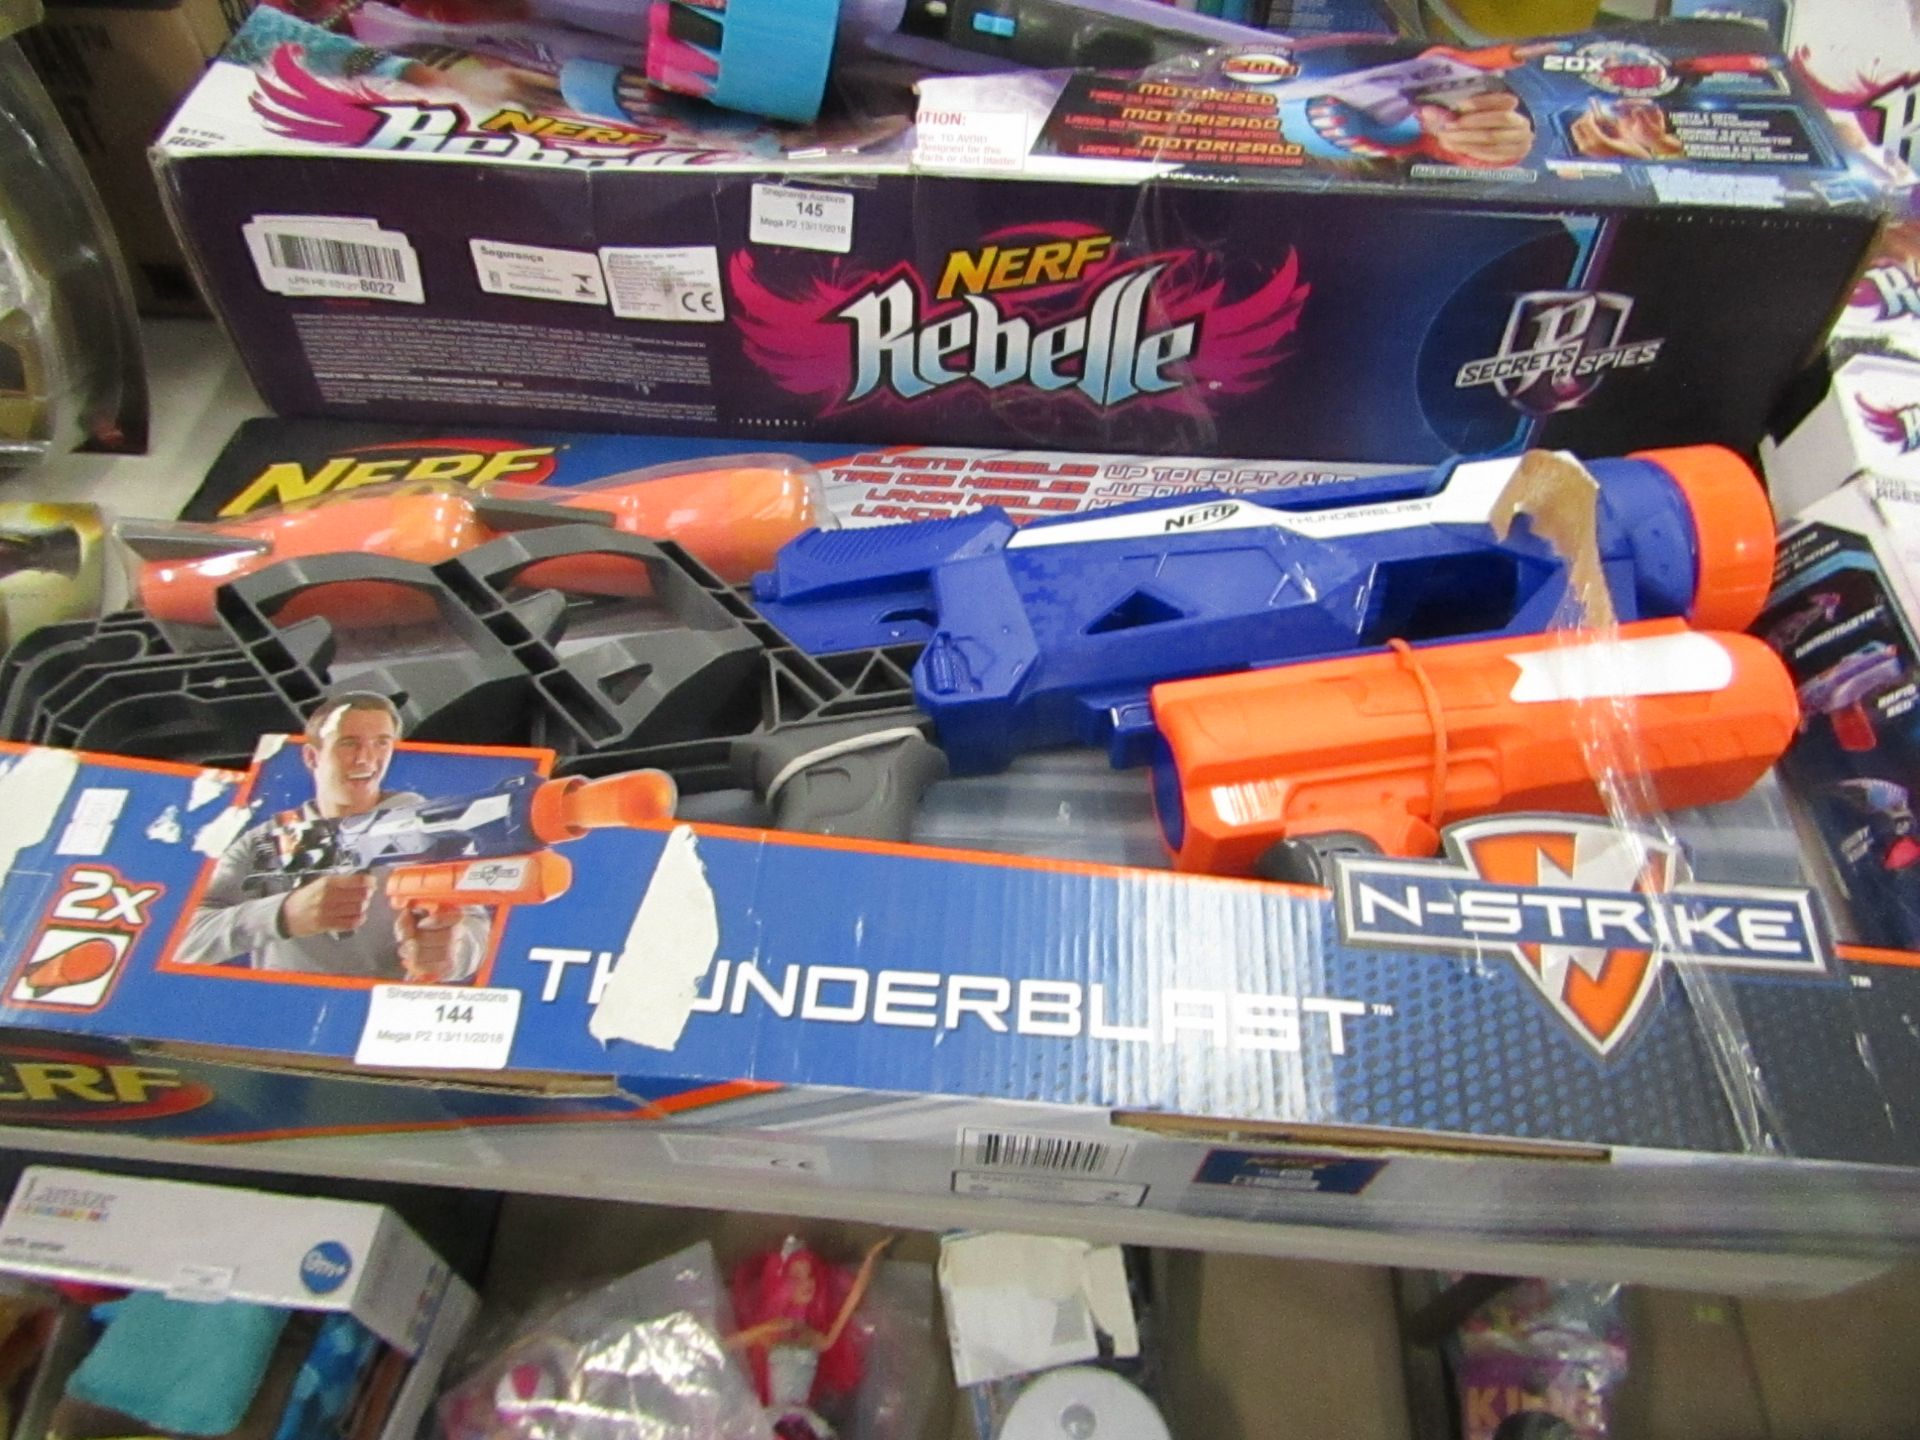 Nerf Thunderblast set, packaged.